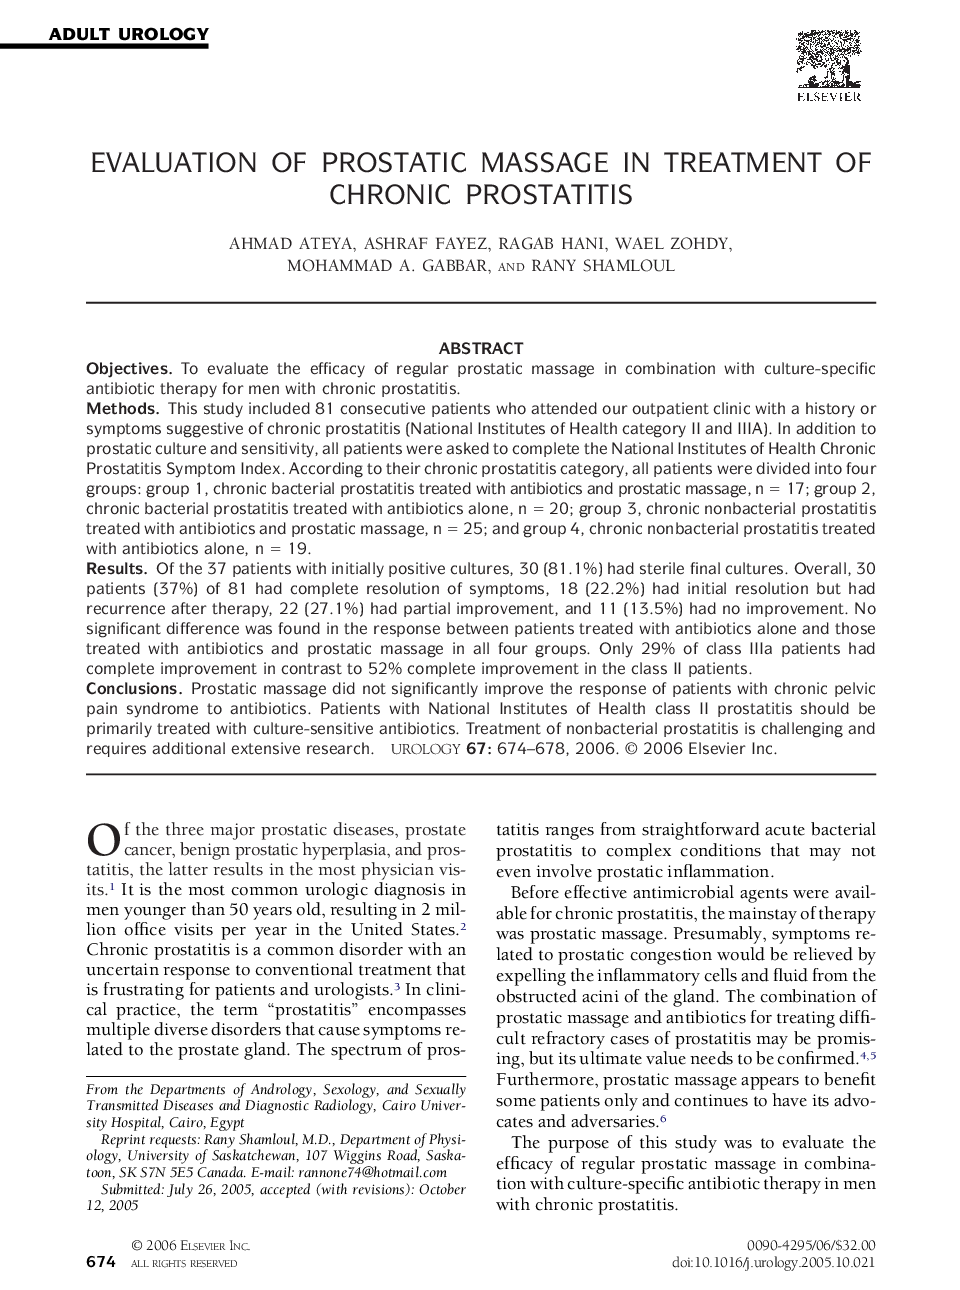 Evaluation of prostatic massage in treatment of chronic prostatitis